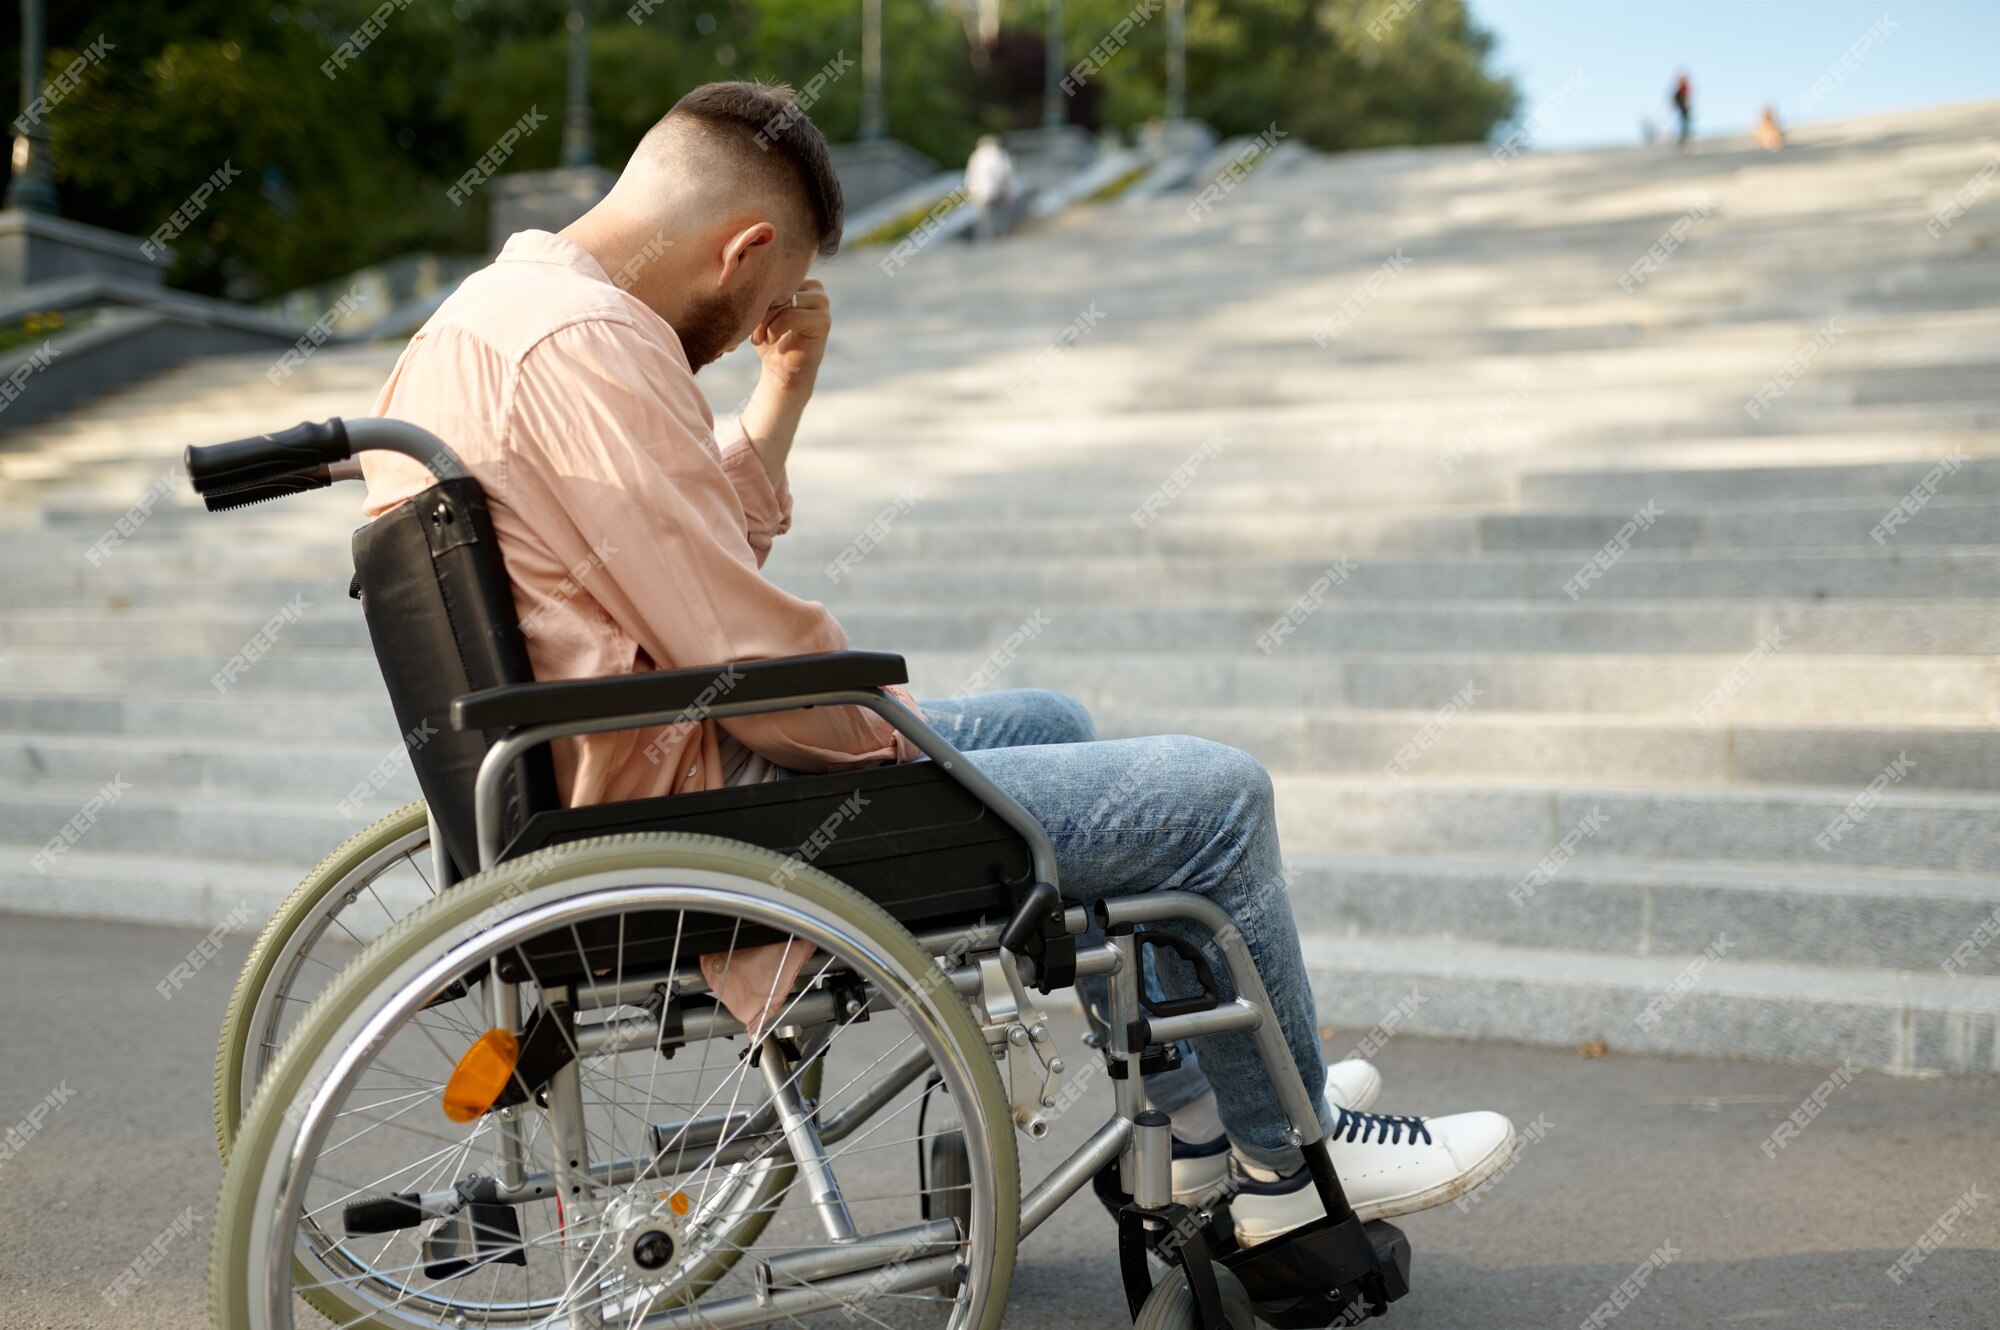 solo-joven-silla-ruedas-escaleras-problema-discapacidad-paralizados-discapacidad-superacion-discapac